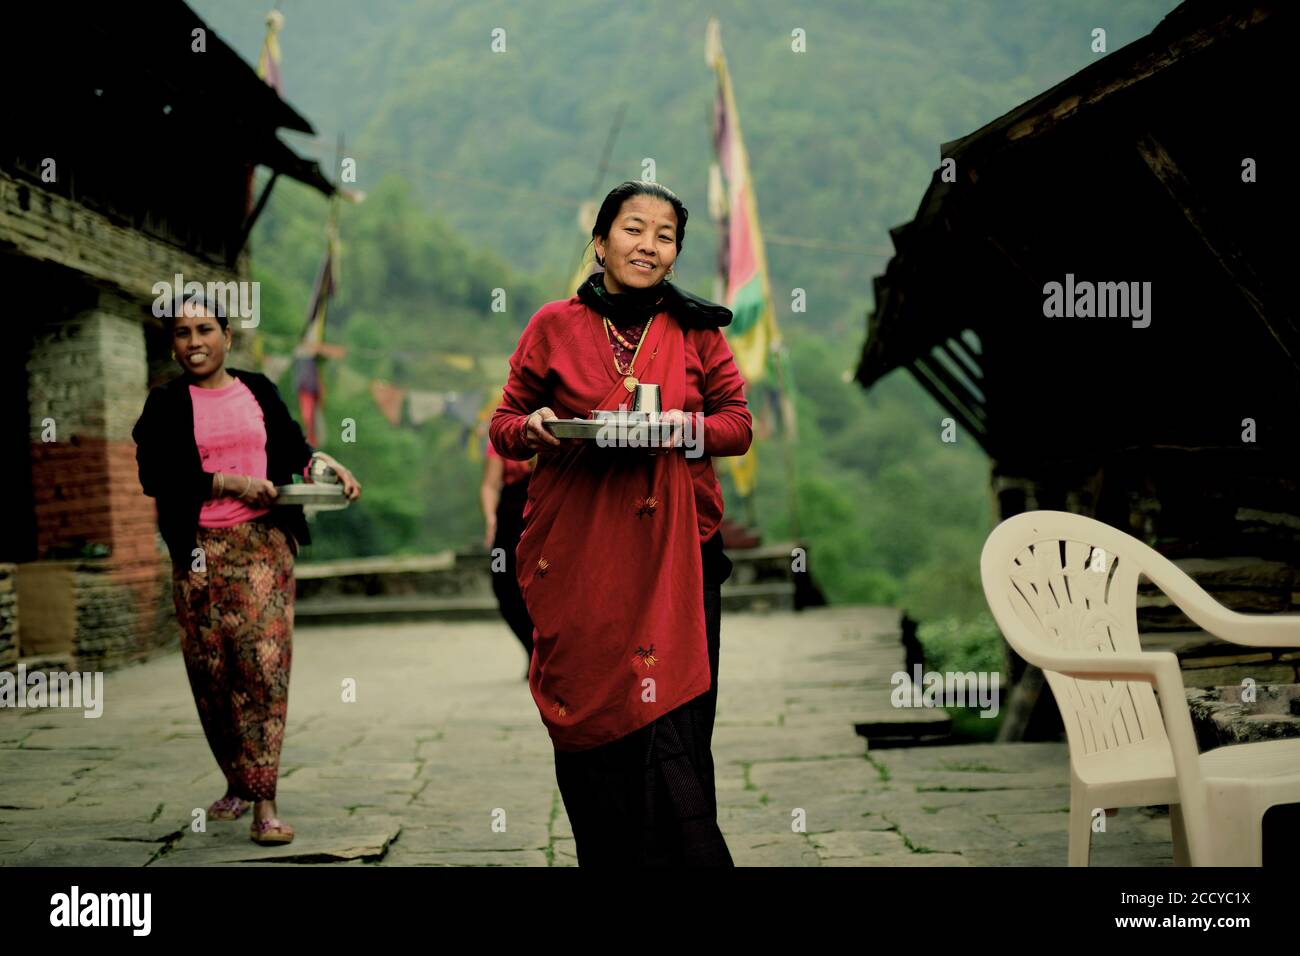 Gli abitanti del villaggio portano pasti per i visitatori al villaggio di Sidhane nella regione montana di Panchase, Kaski, Gandaki Pradesh, Nepal. Foto Stock